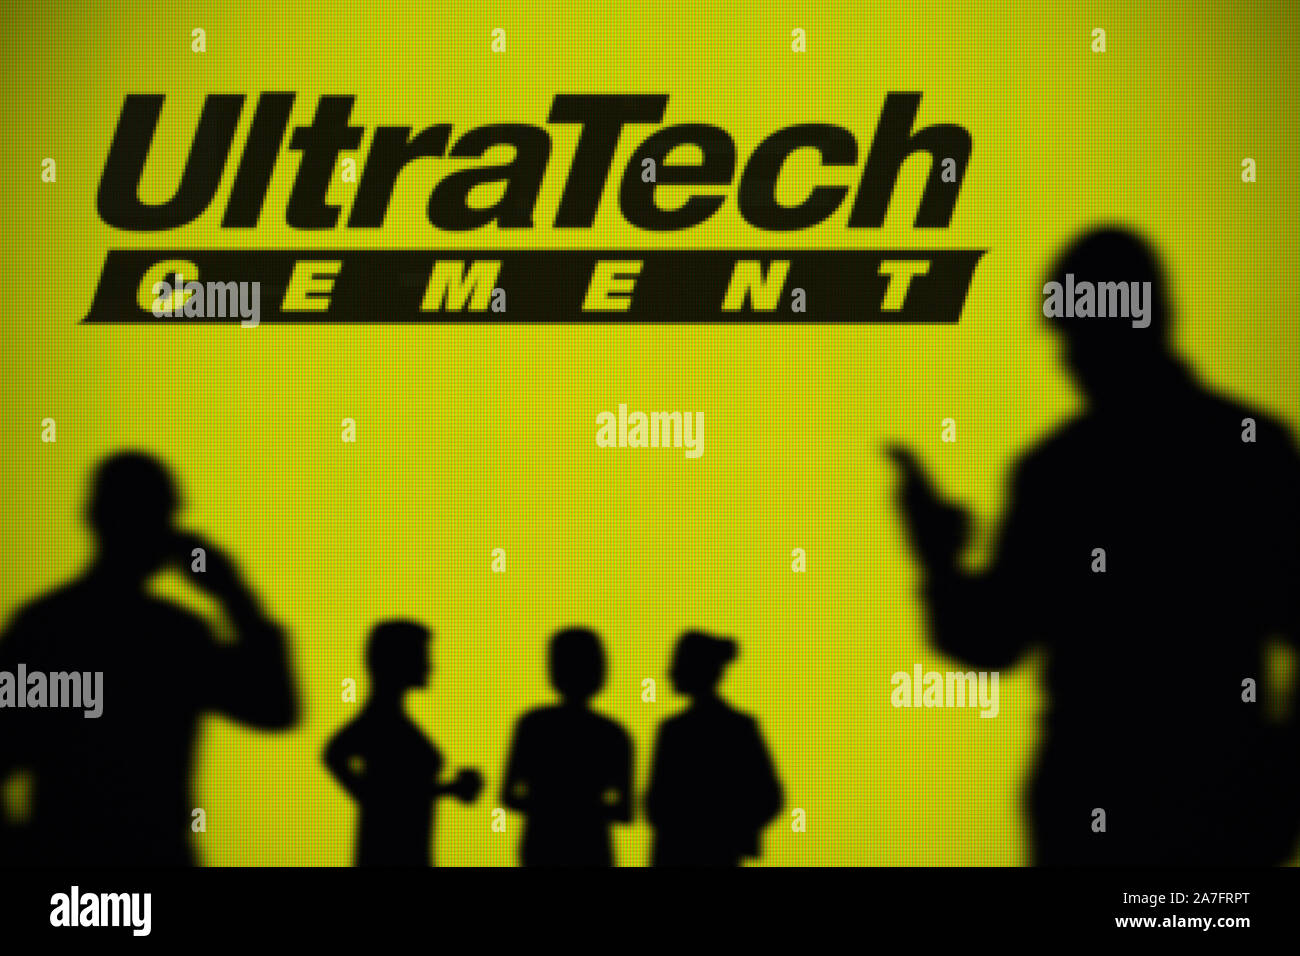 L'UltraTech Cement logo est visible sur un écran LED à l'arrière-plan tandis qu'une silhouette personne utilise un smartphone (usage éditorial uniquement) Banque D'Images